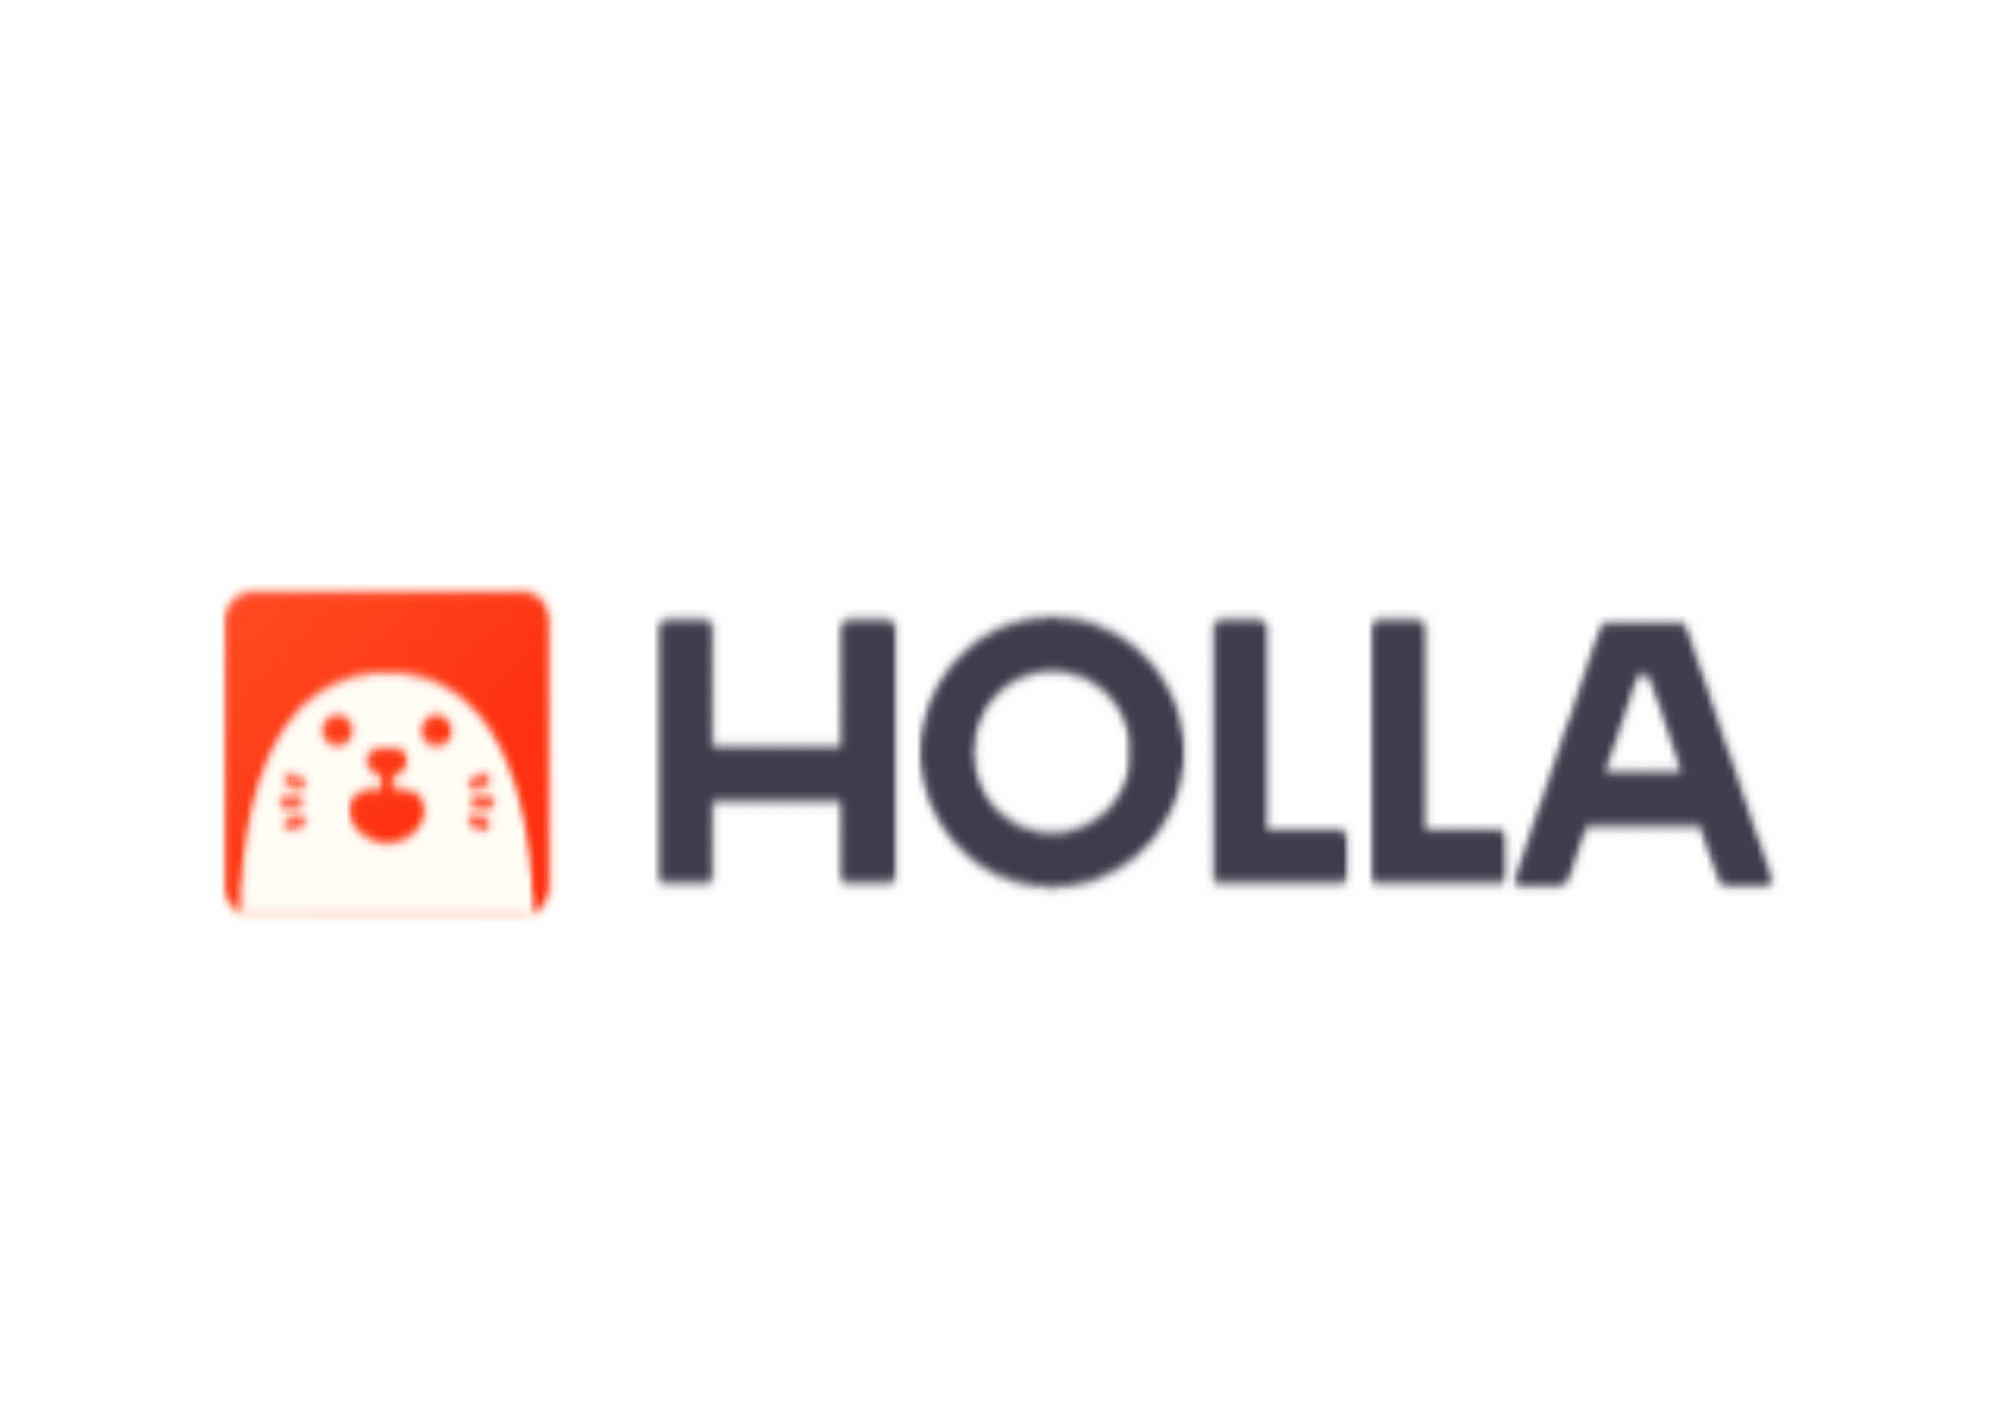 Holla App